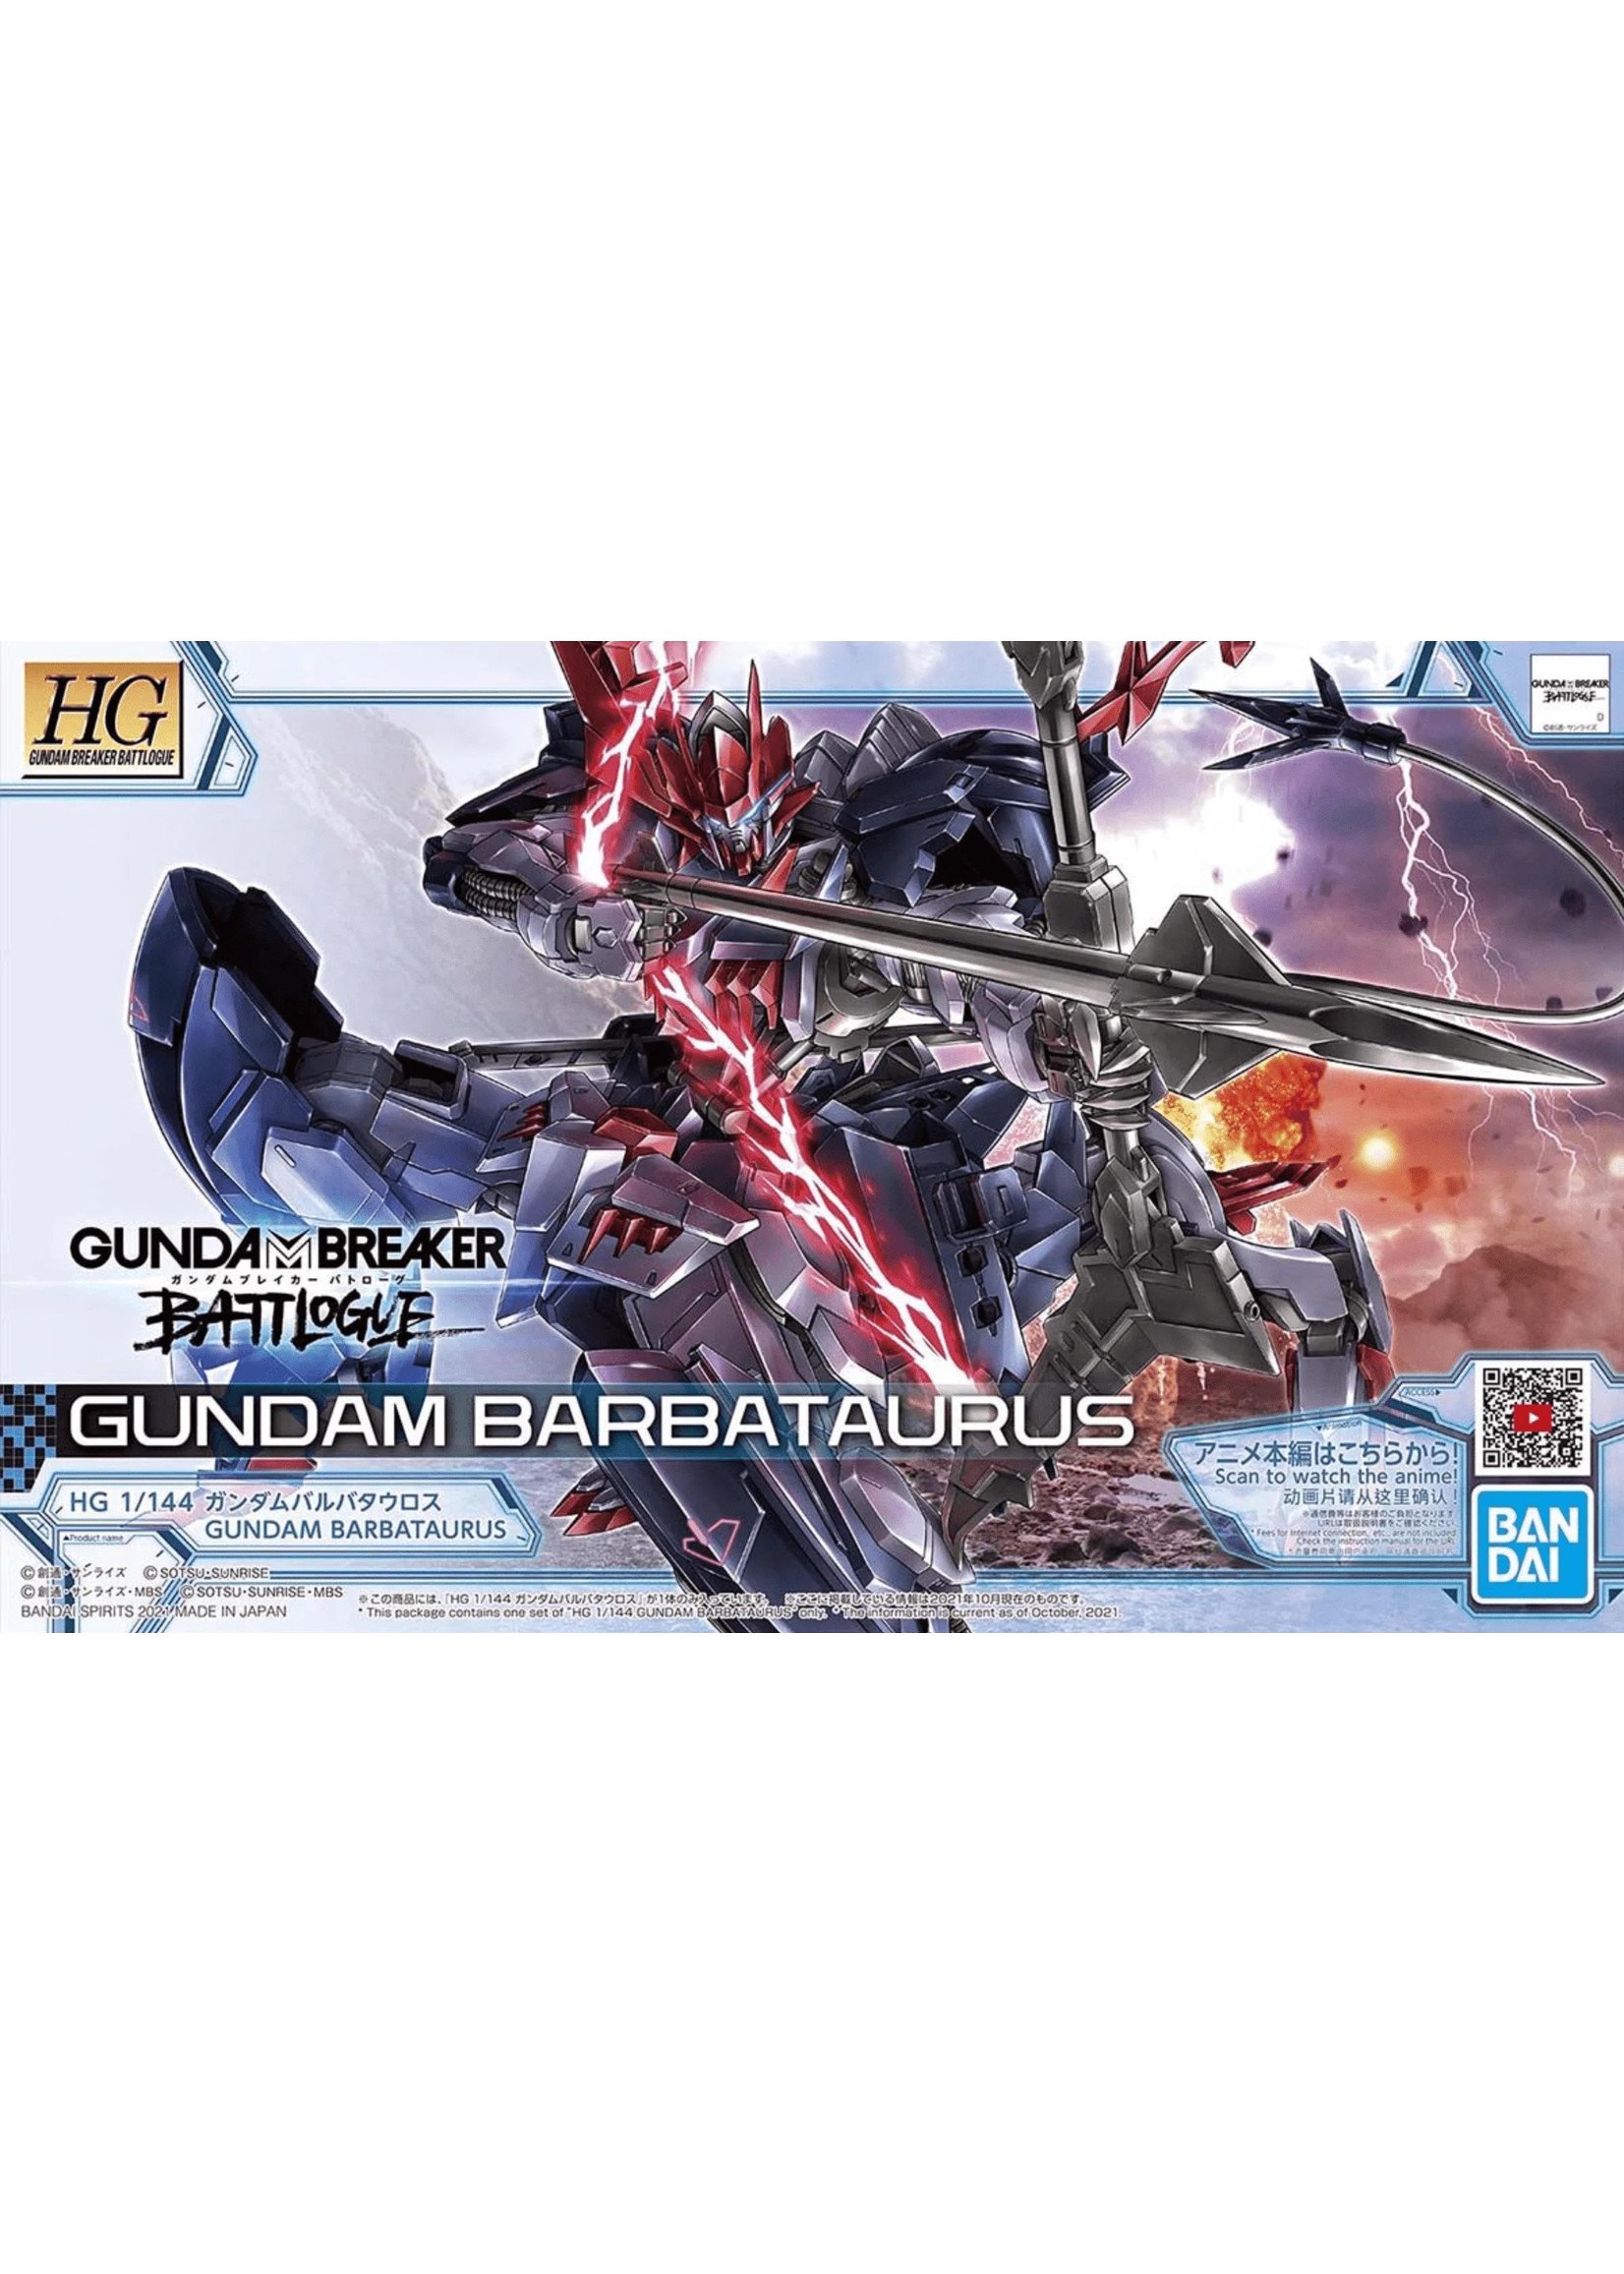 Bandai Gundam Barbataurus